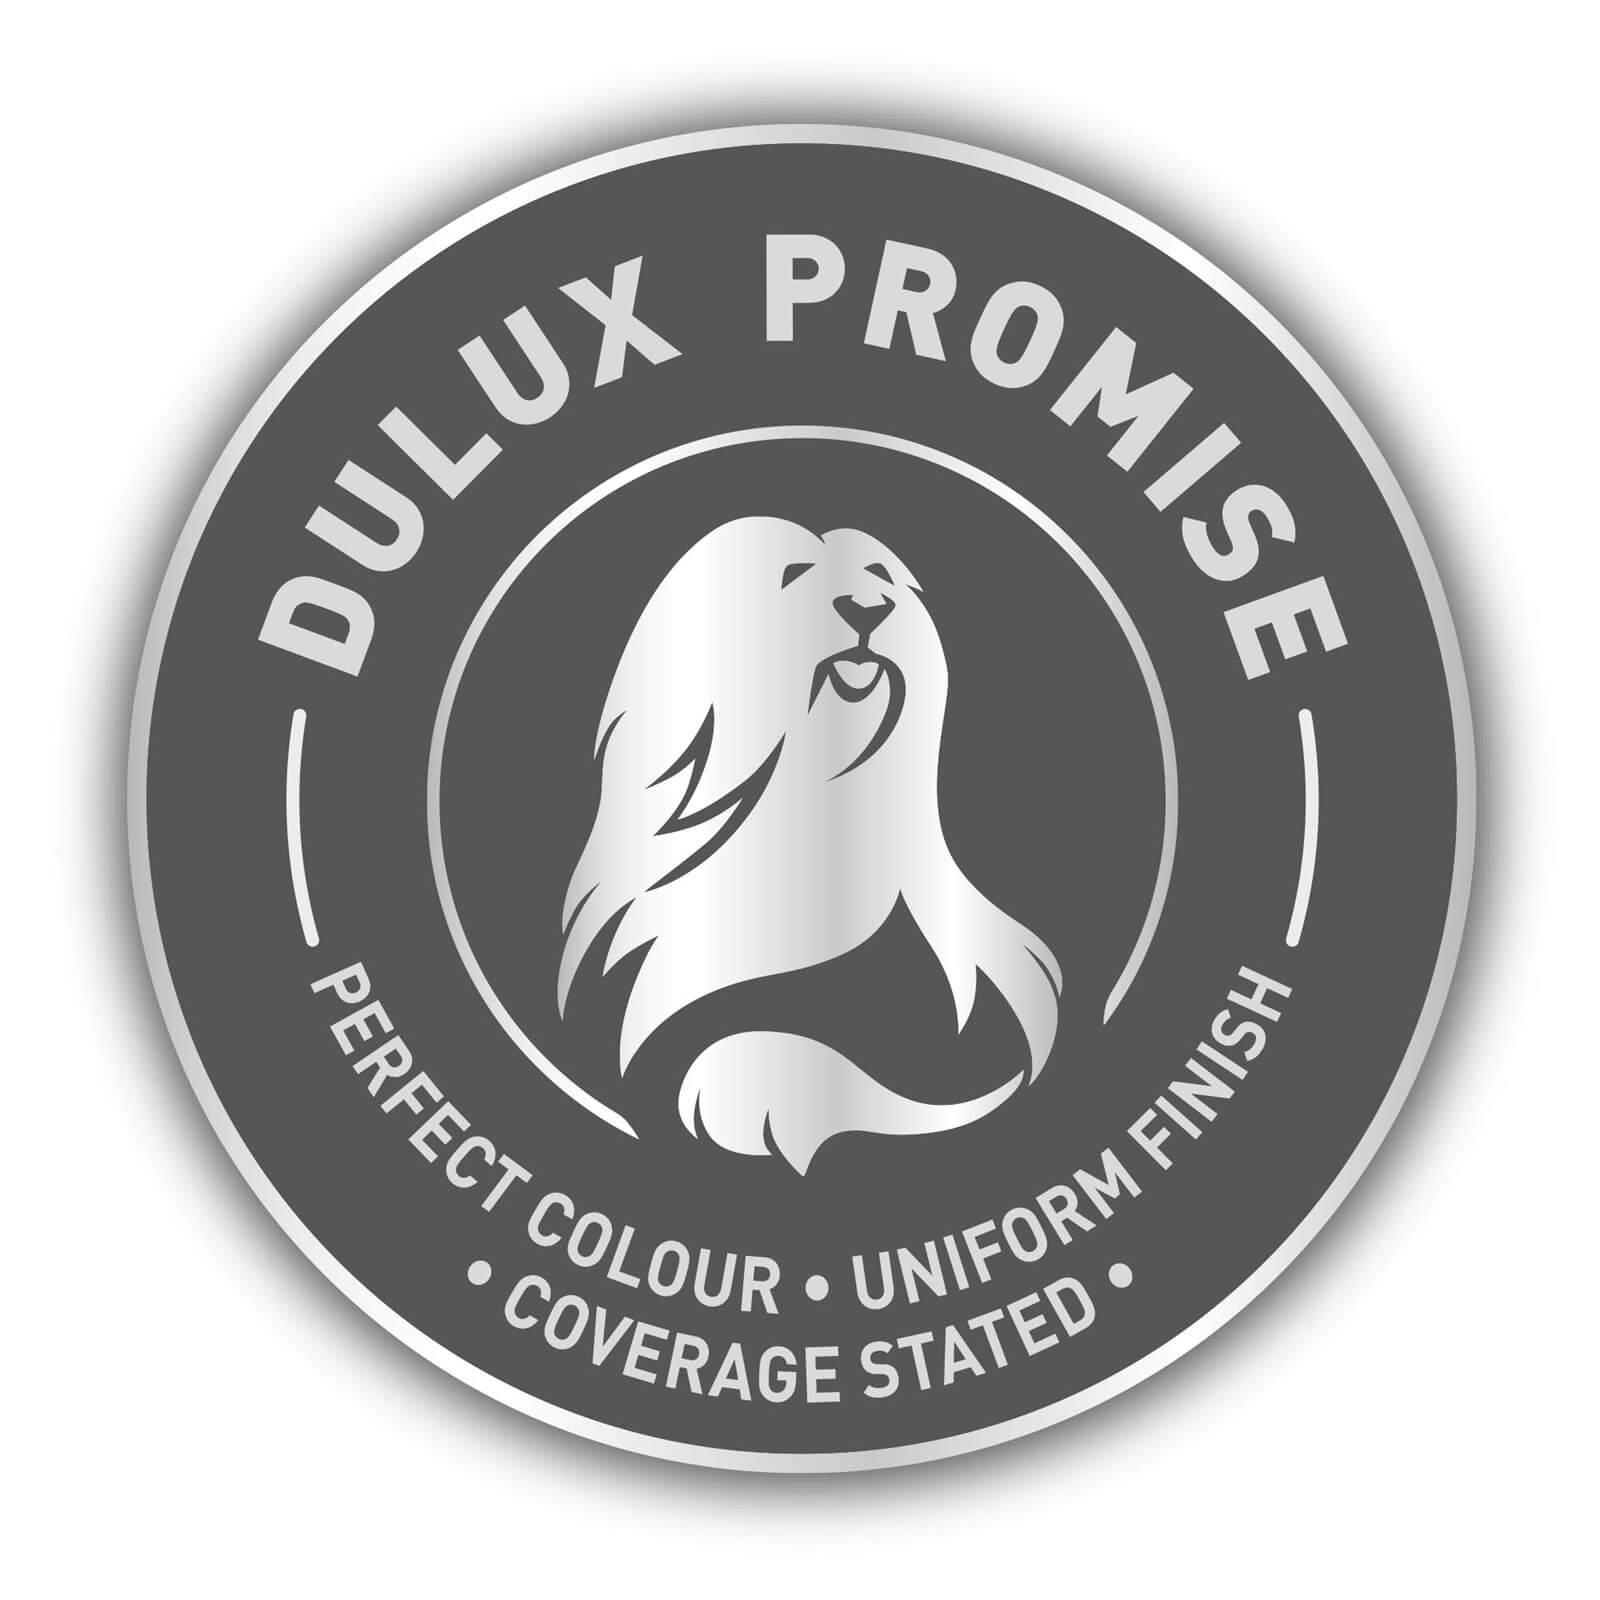 Dulux Silk Emulsion Paint Copper Blush - 2.5L